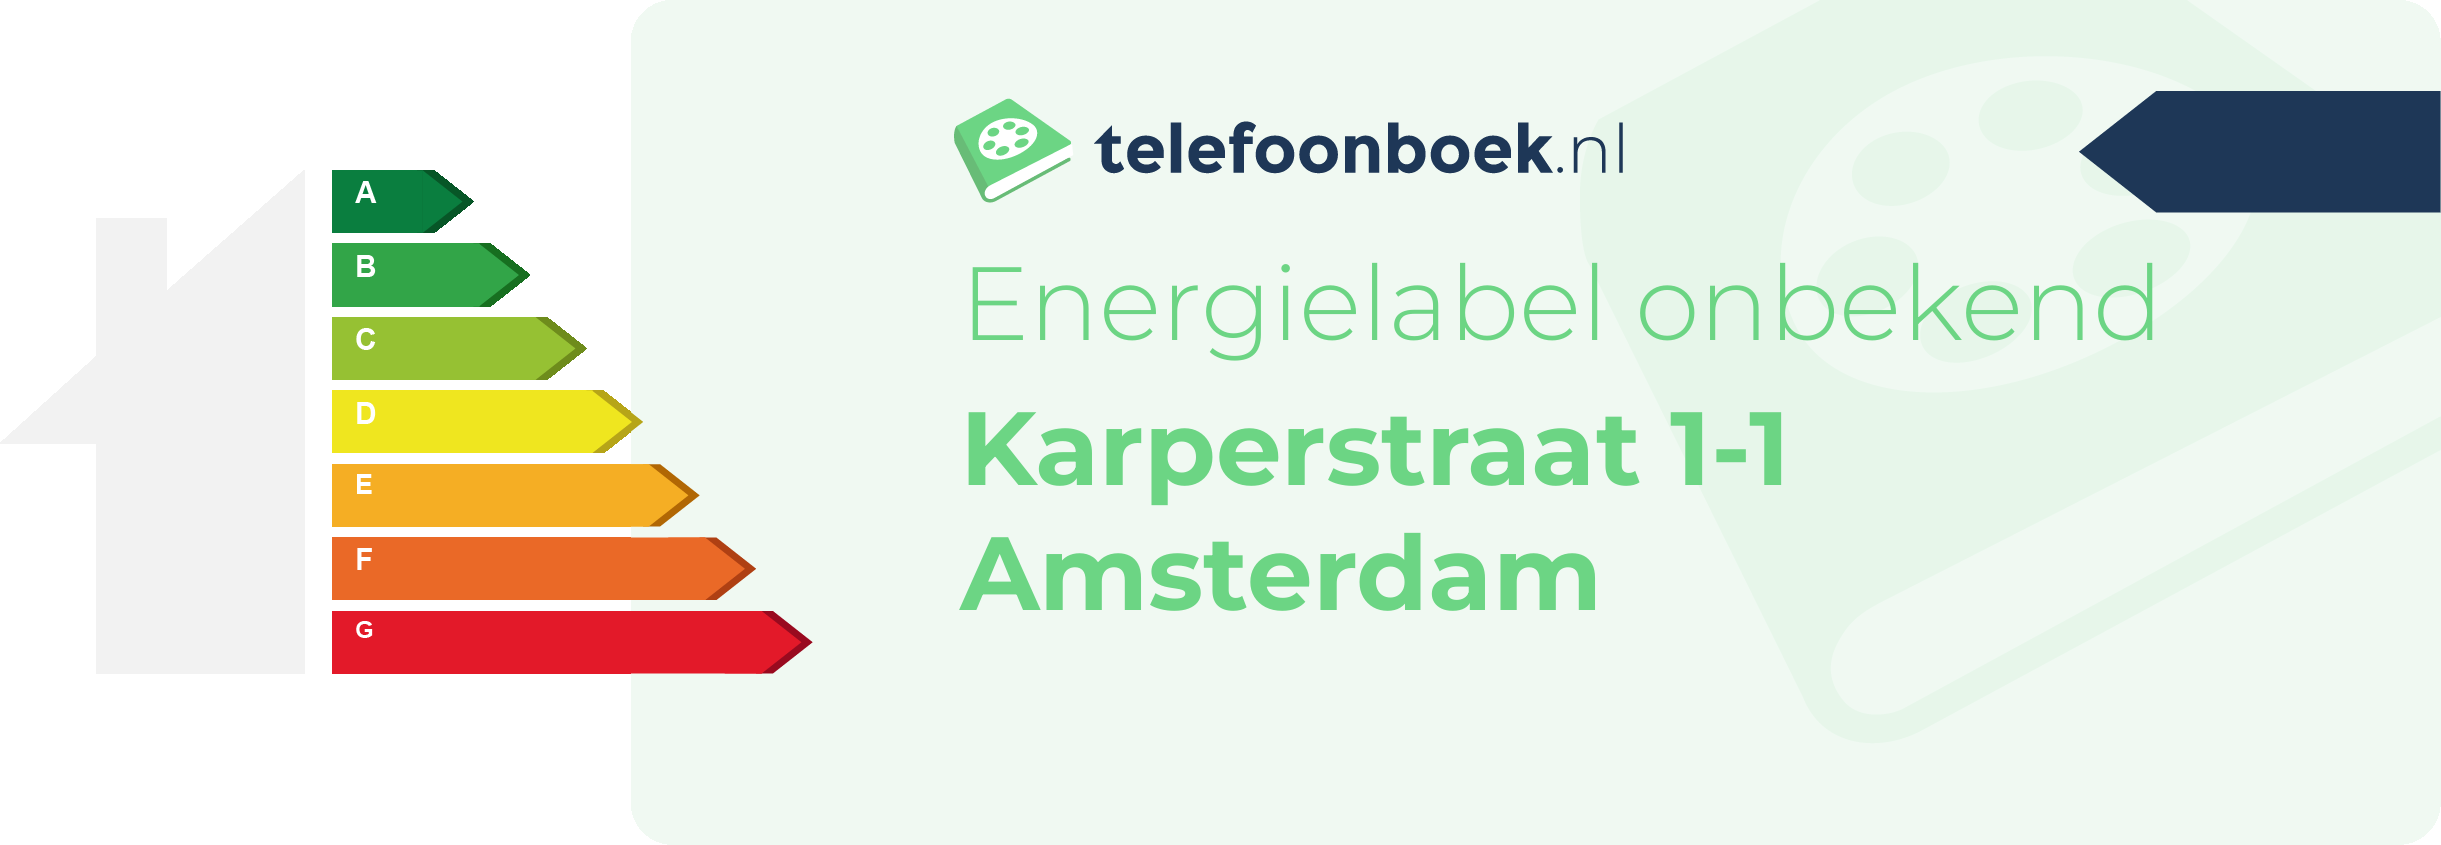 Energielabel Karperstraat 1-1 Amsterdam